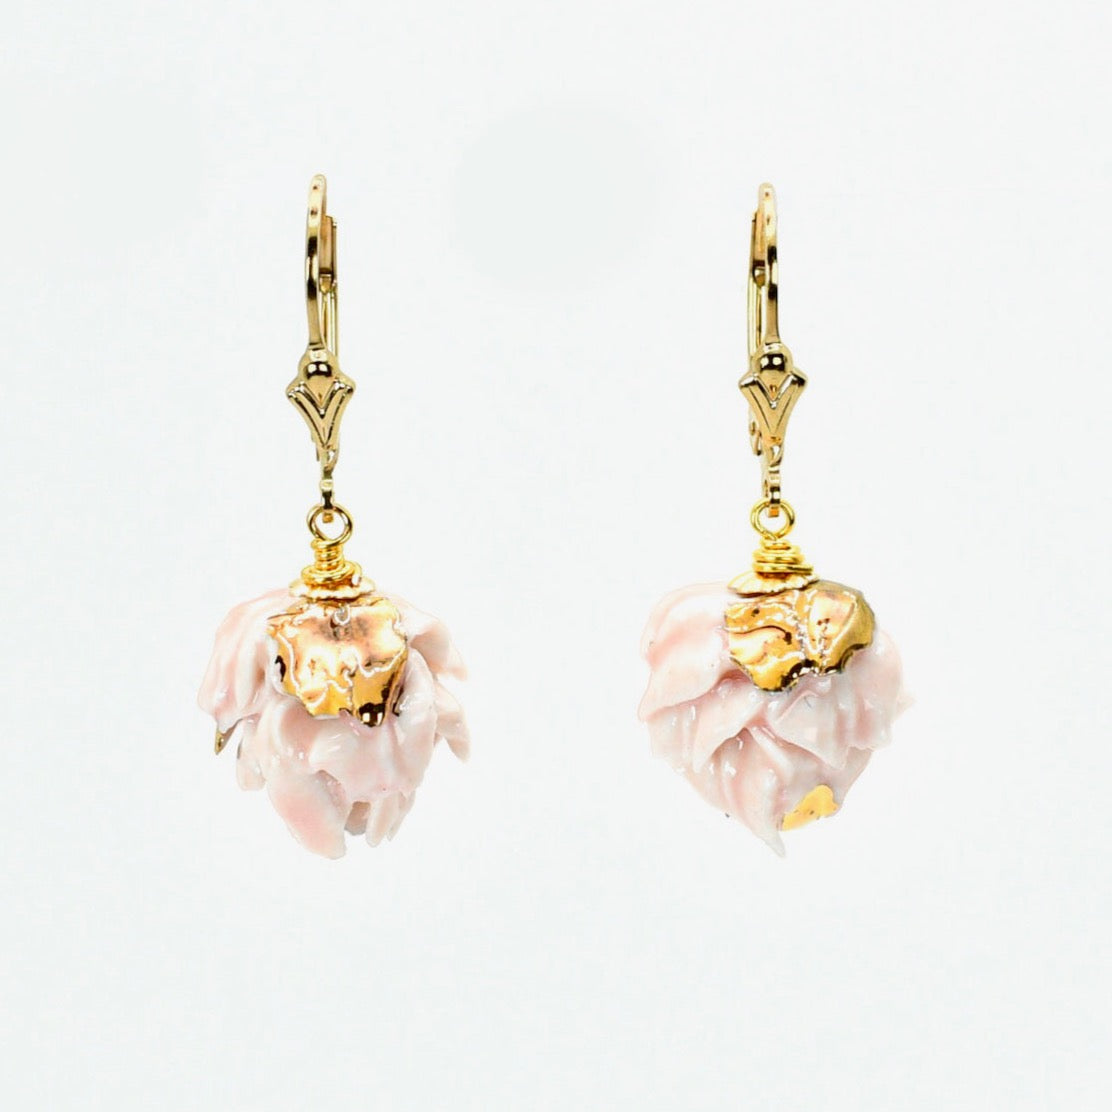 Pink porcelain artichoke earrings, leverbacks gold-filled,  embellished with 24K gold